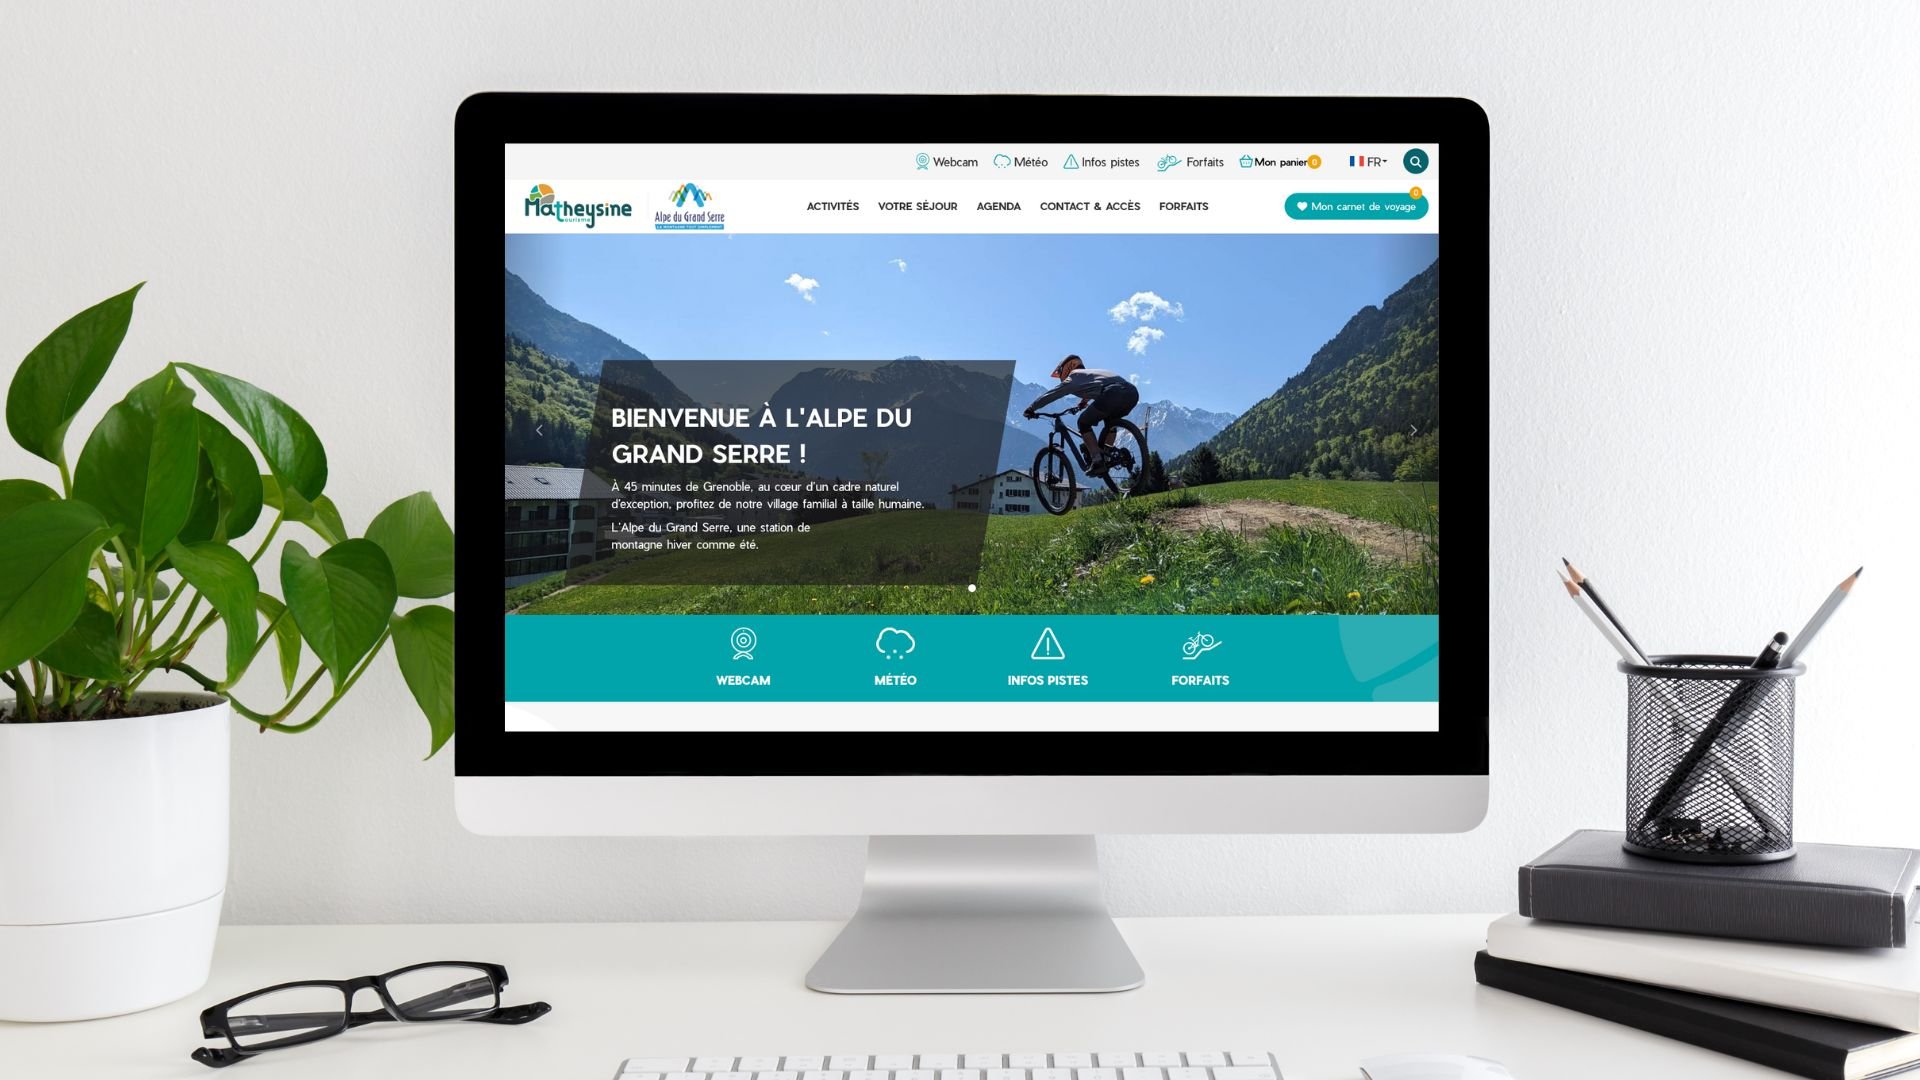 Site Web de l'alpe du grand serre fusionné avec l'office de tourisme de la Matheysine